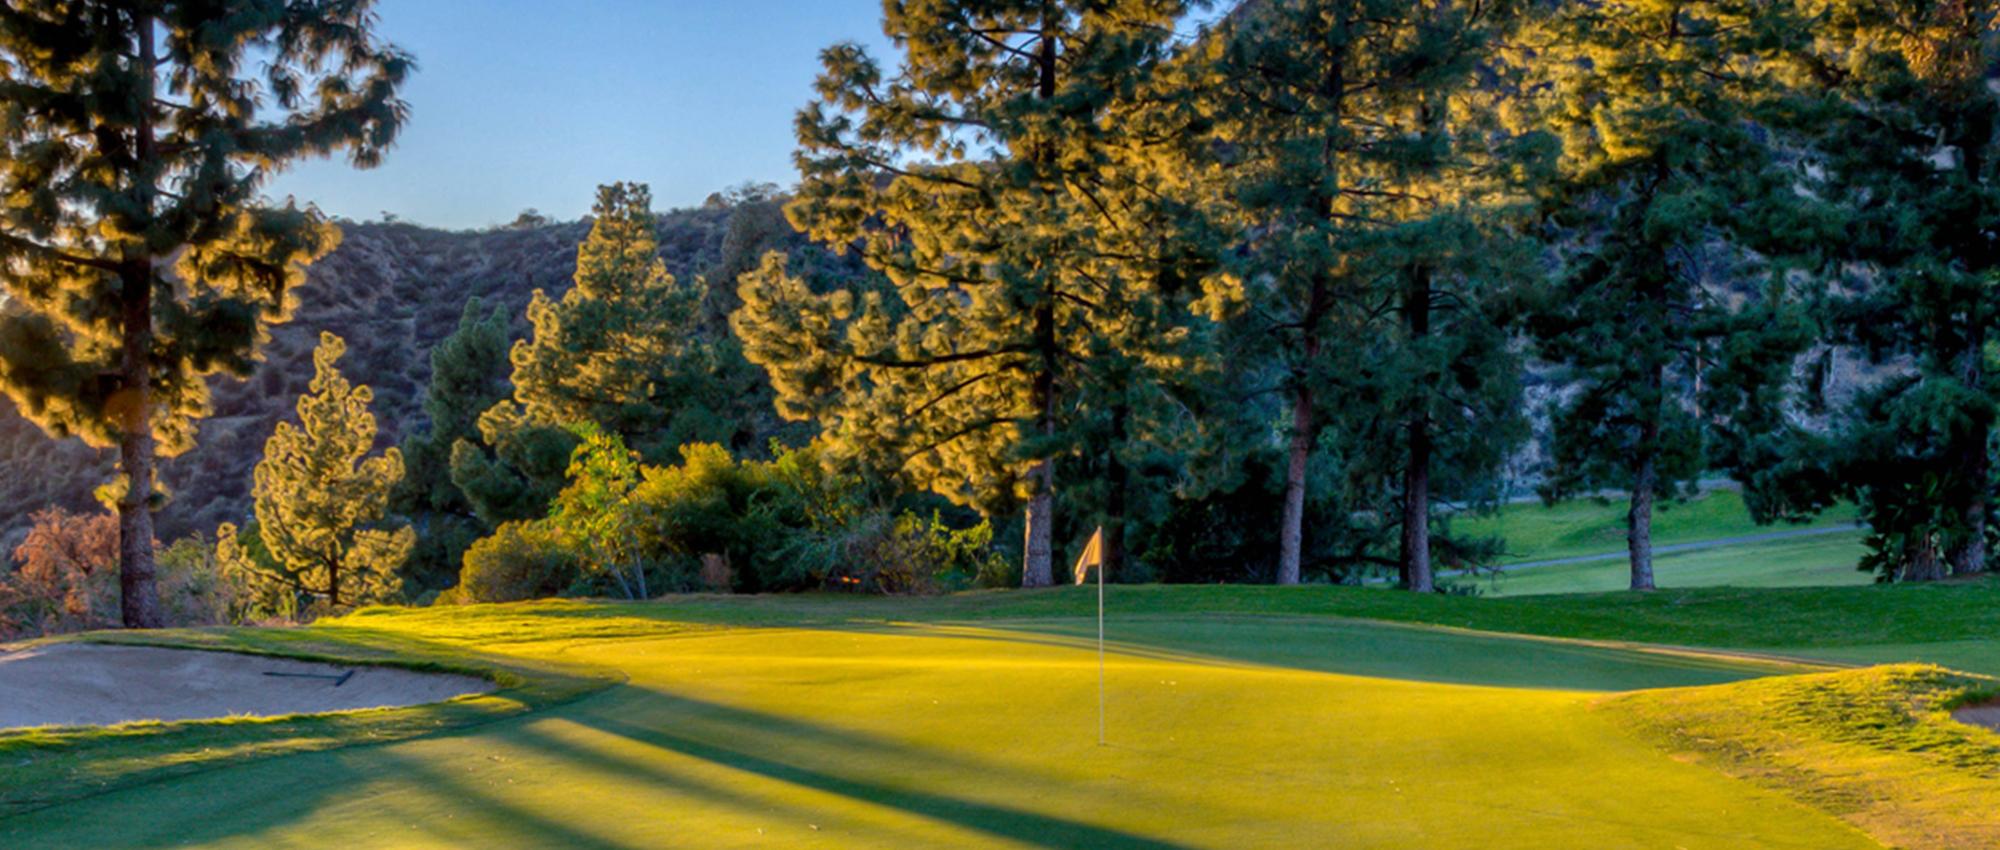 Golf Courses in Los Angeles County | San Fernando Valley ...